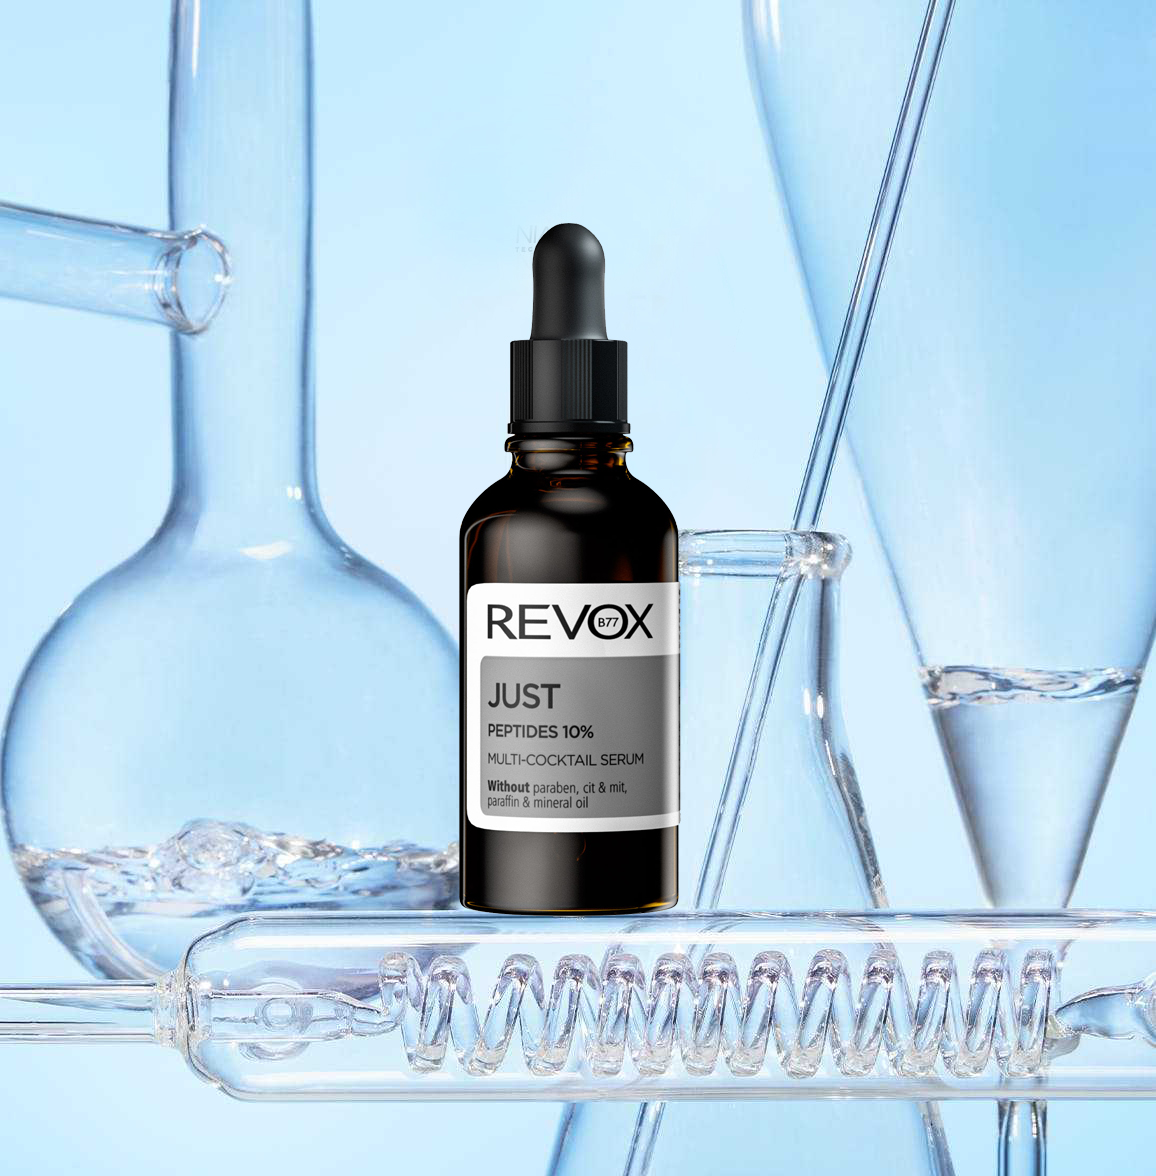 Tinh Chất Hỗn Hợp Revox B77 Just Peptides 10% Multi-Cocktail Serum Giúp Săn Chắc Da 30ml